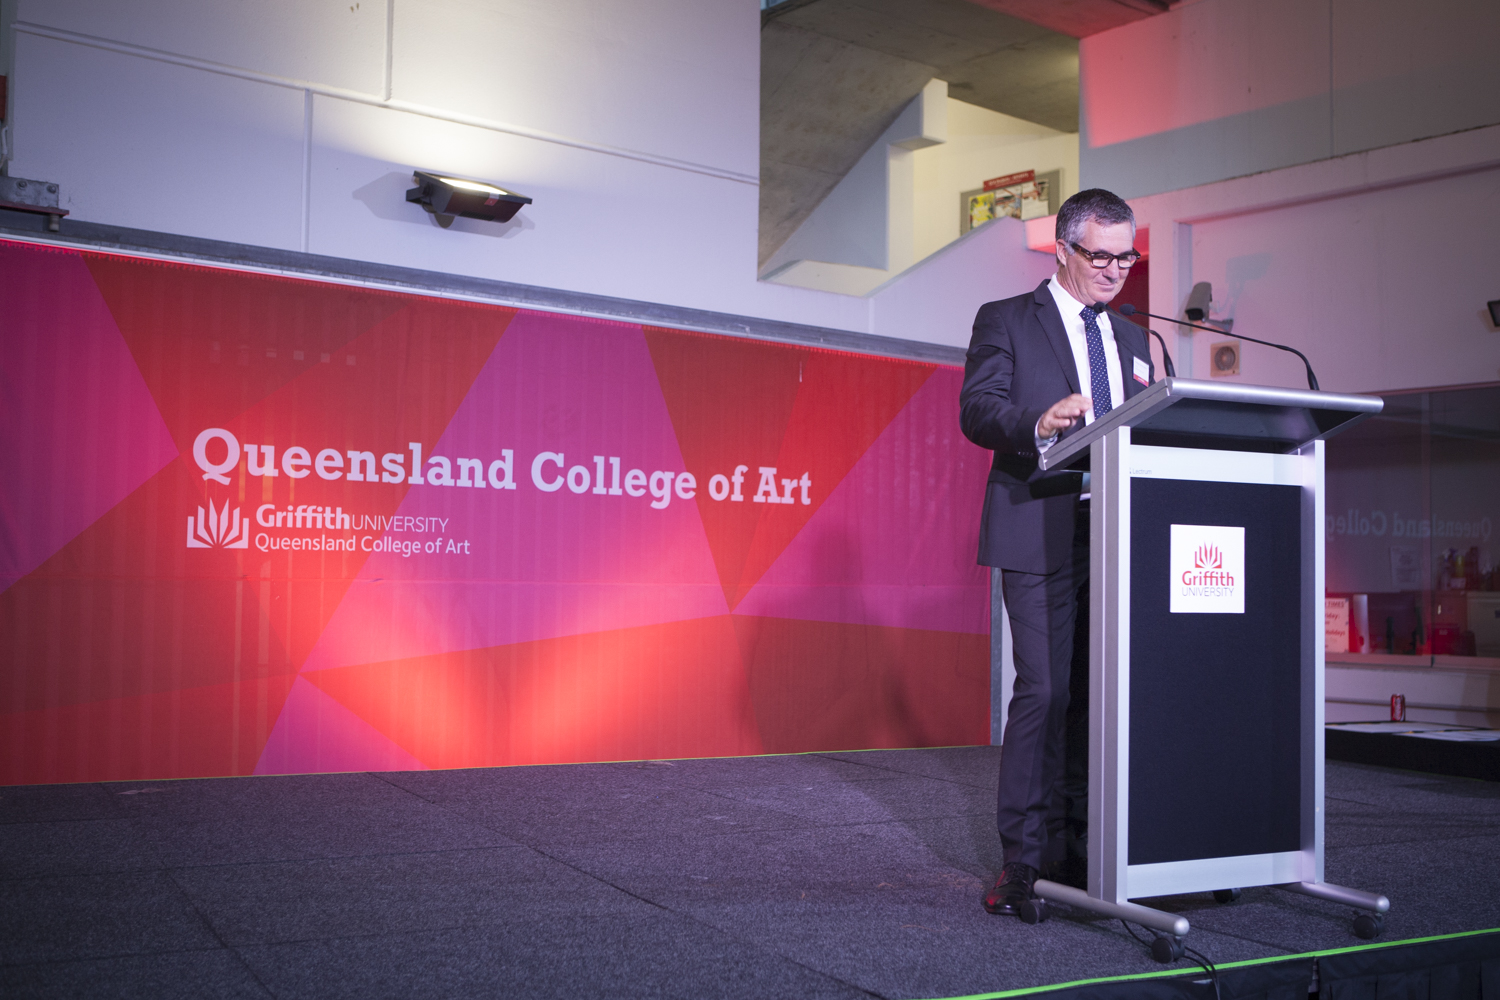 Derrick Cherrie, Director, Queensland College of Art